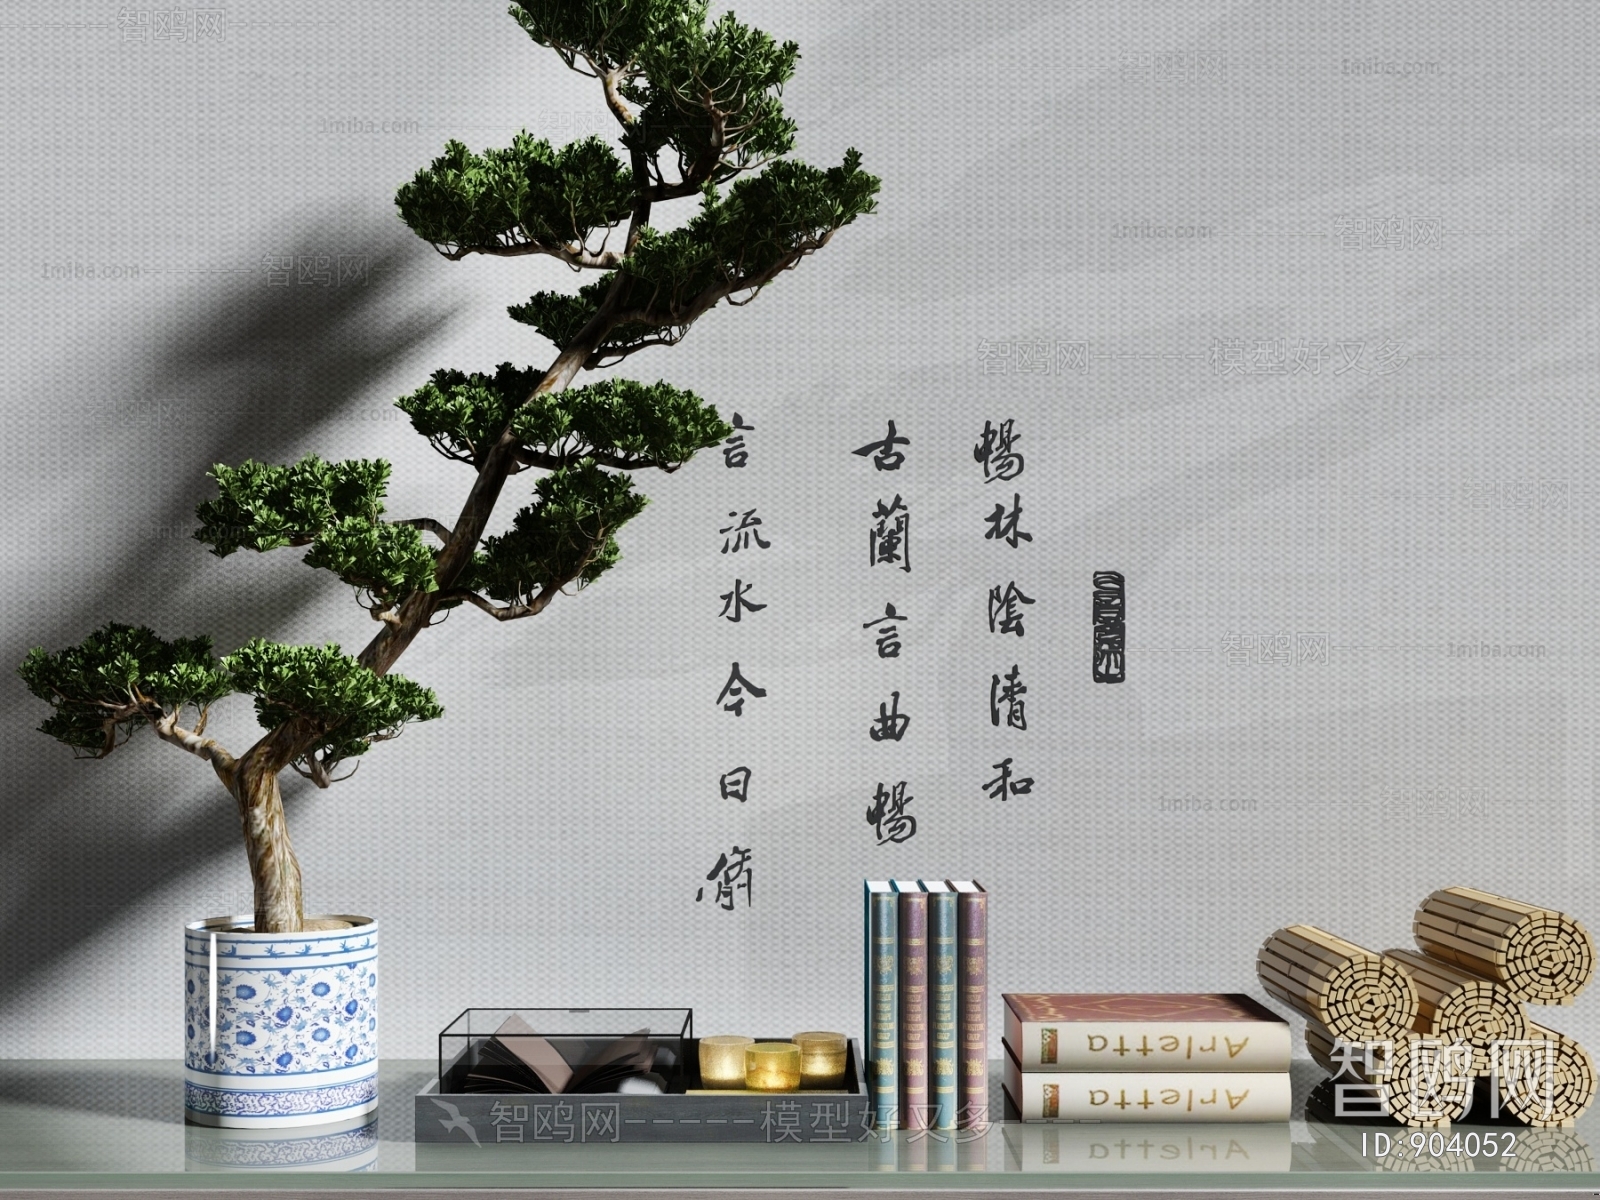 新中式盆景书籍摆件